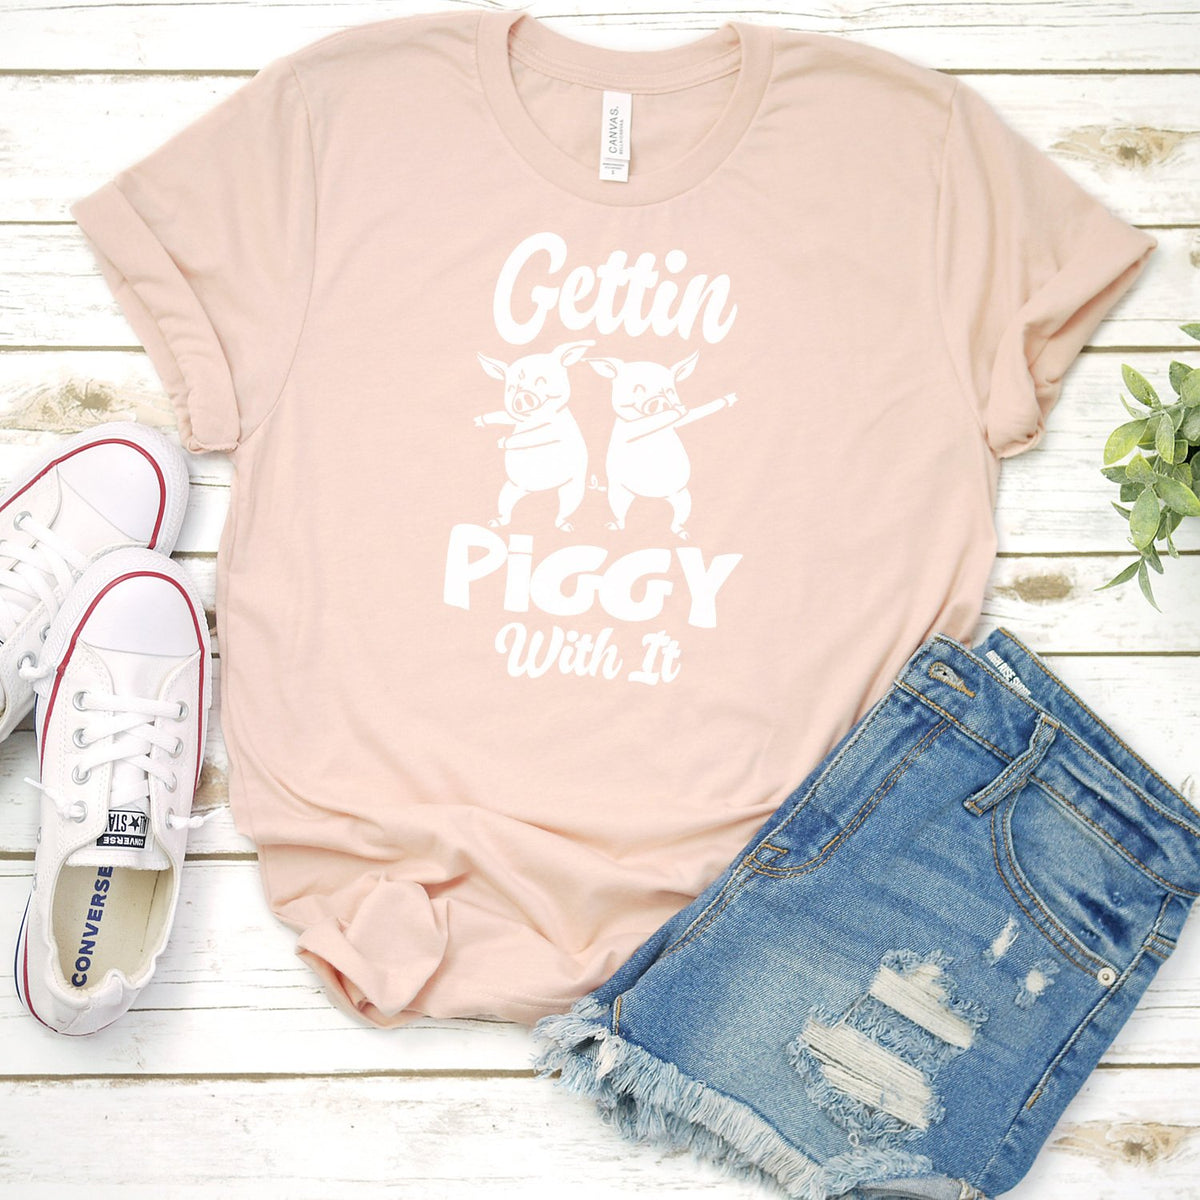 Gettin Piggy With It - Short Sleeve Tee Shirt